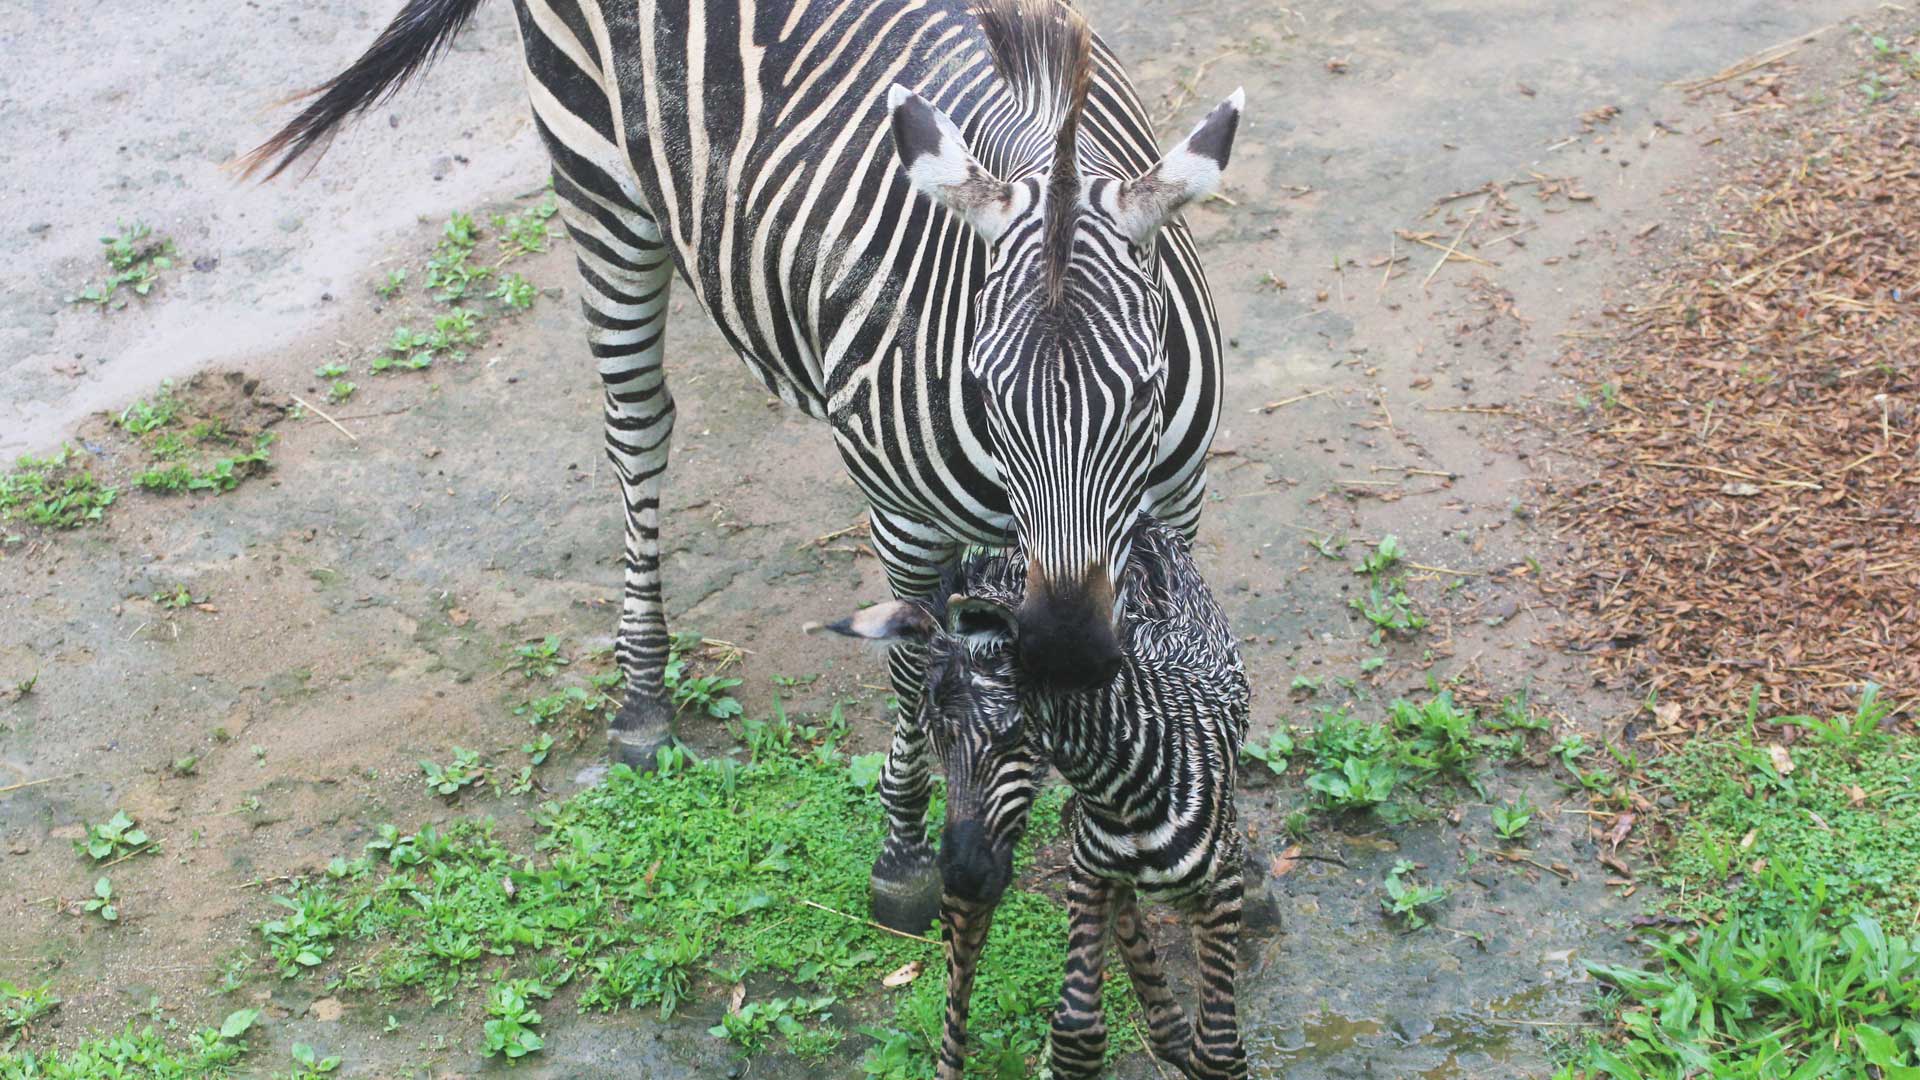 https://cdn.aucklandunlimited.com/zoo/assets/media/zebra-calf-gallery-2.jpg